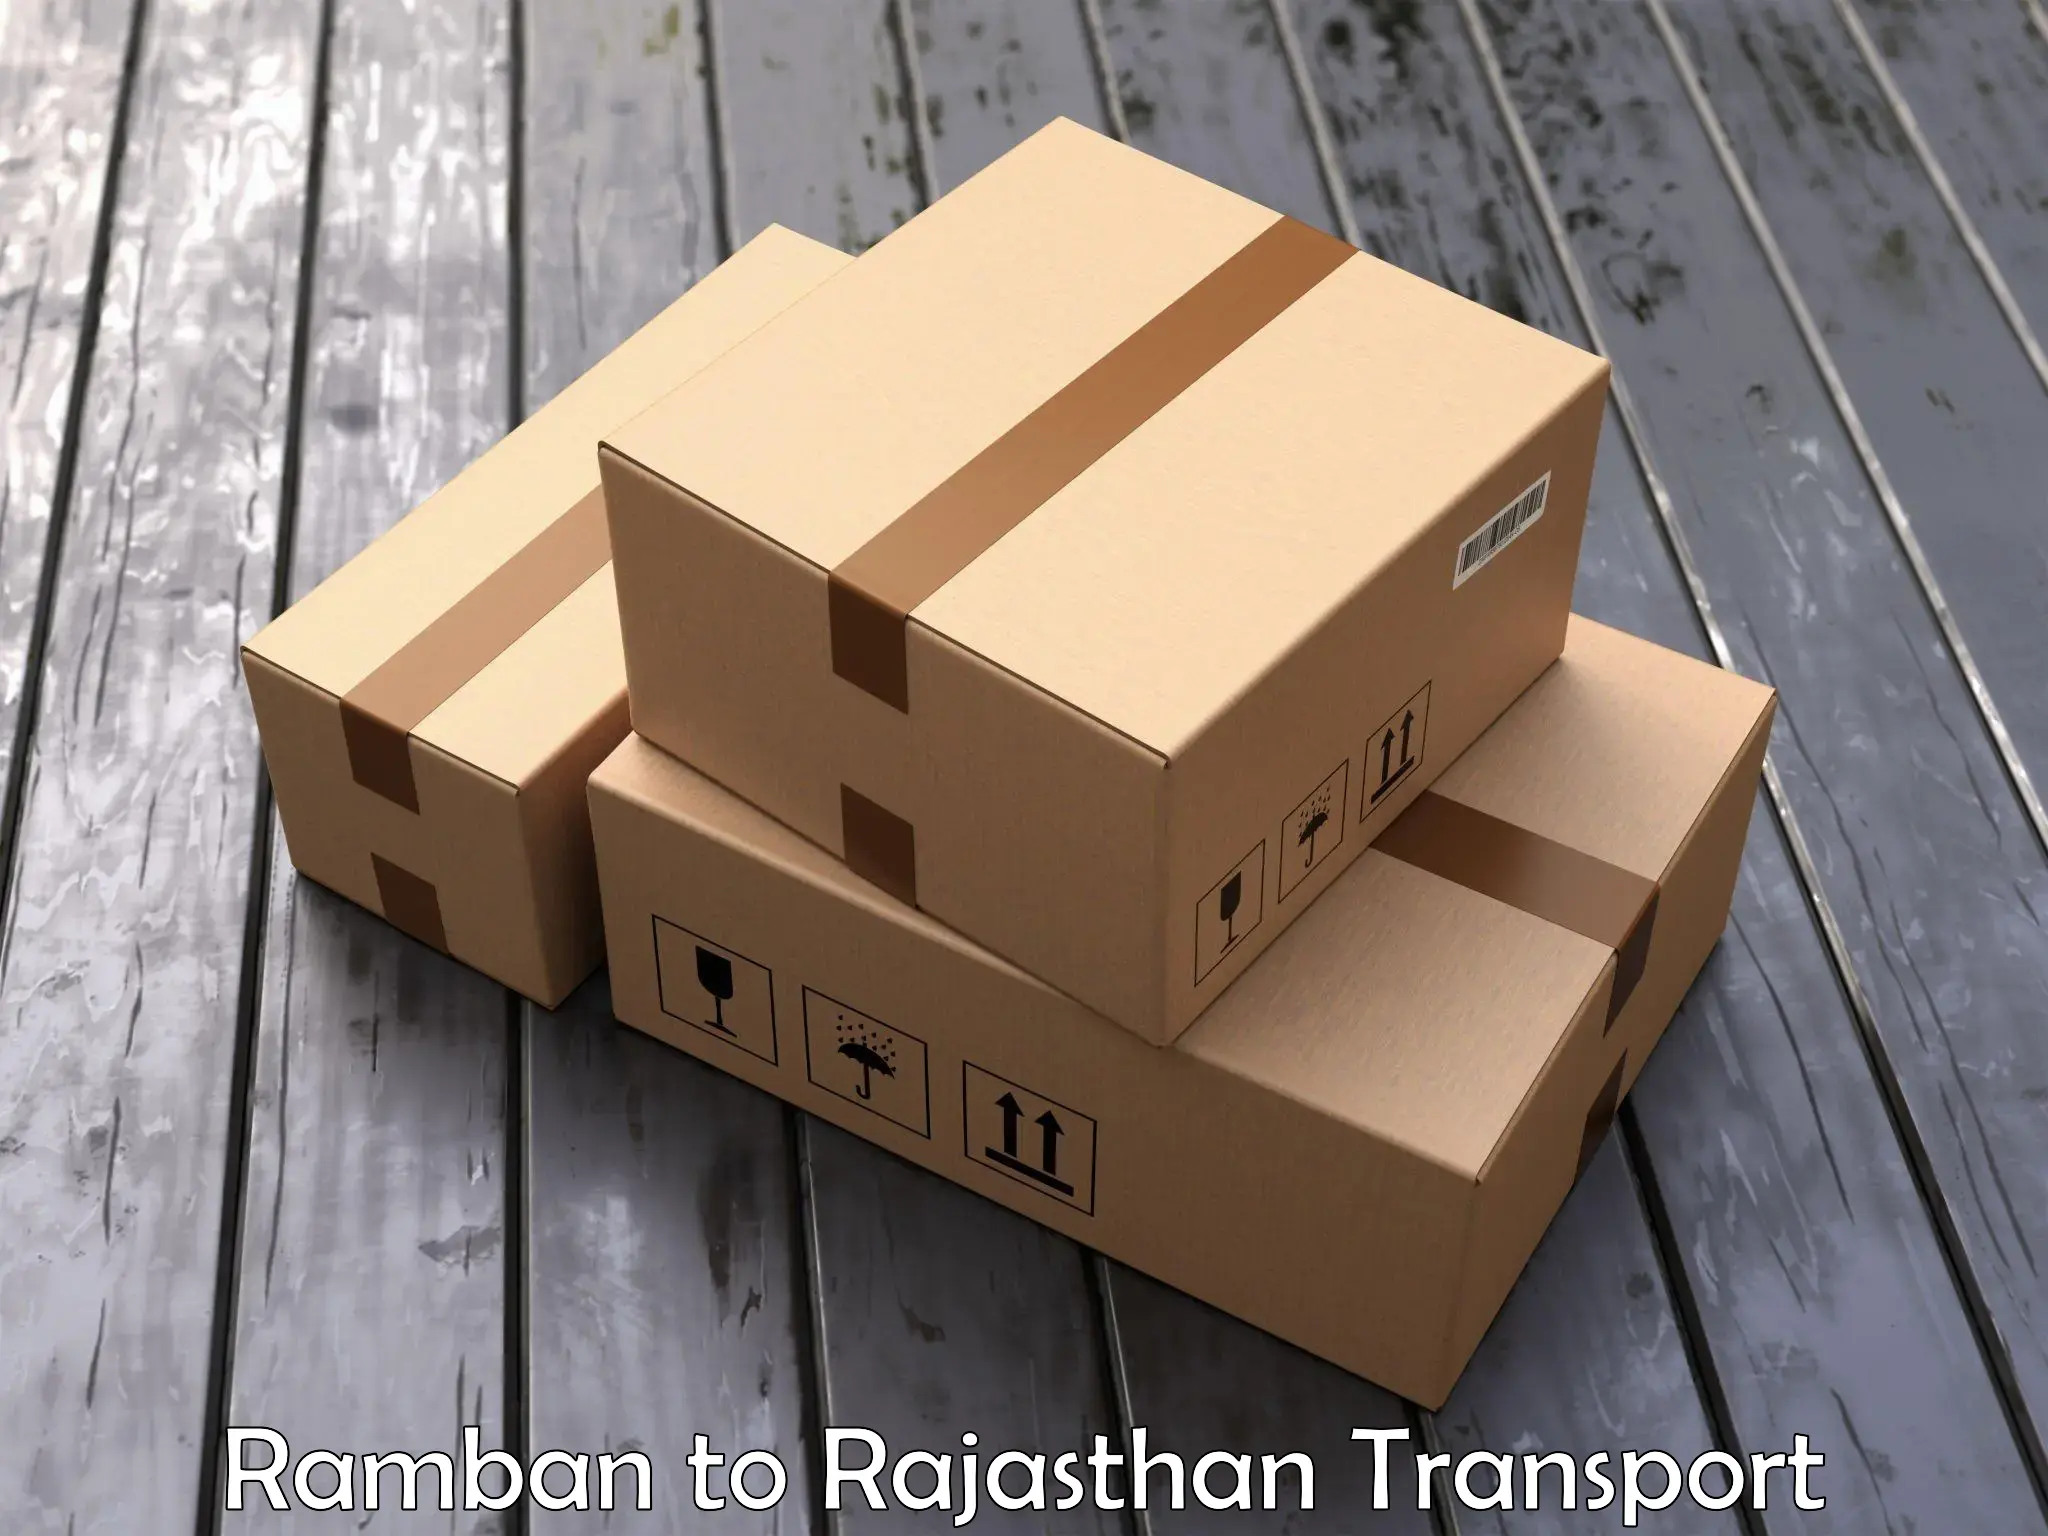 Two wheeler parcel service Ramban to Bhilwara